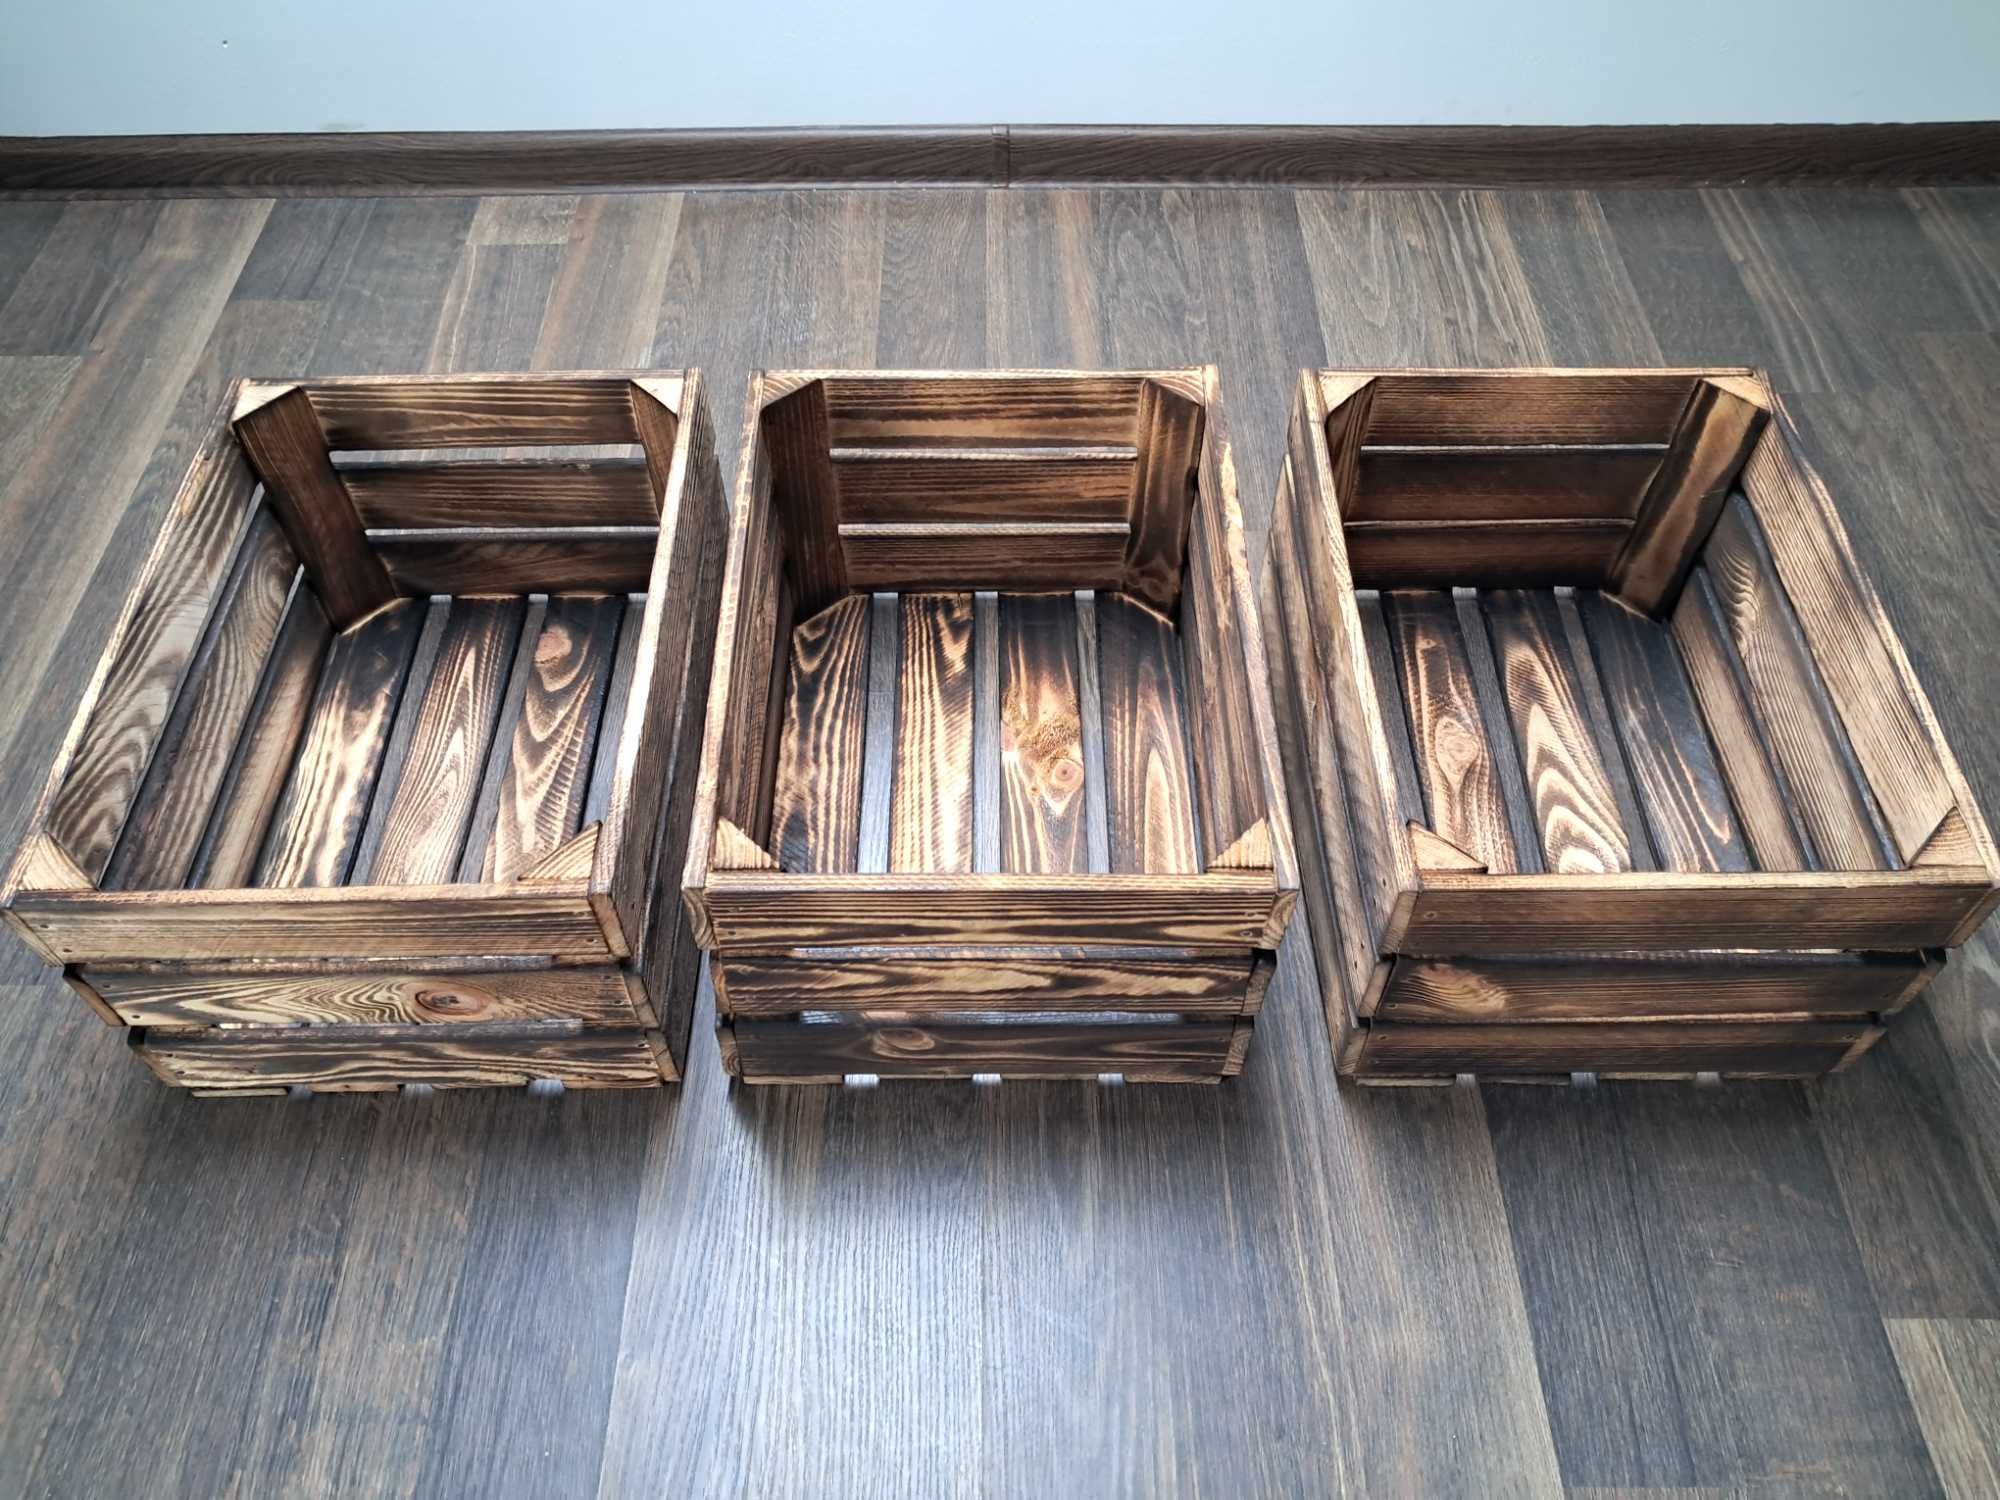 Skrzynka drewniana opalana 40x30x20 trzy sztuki nowe z przesyłką OLX